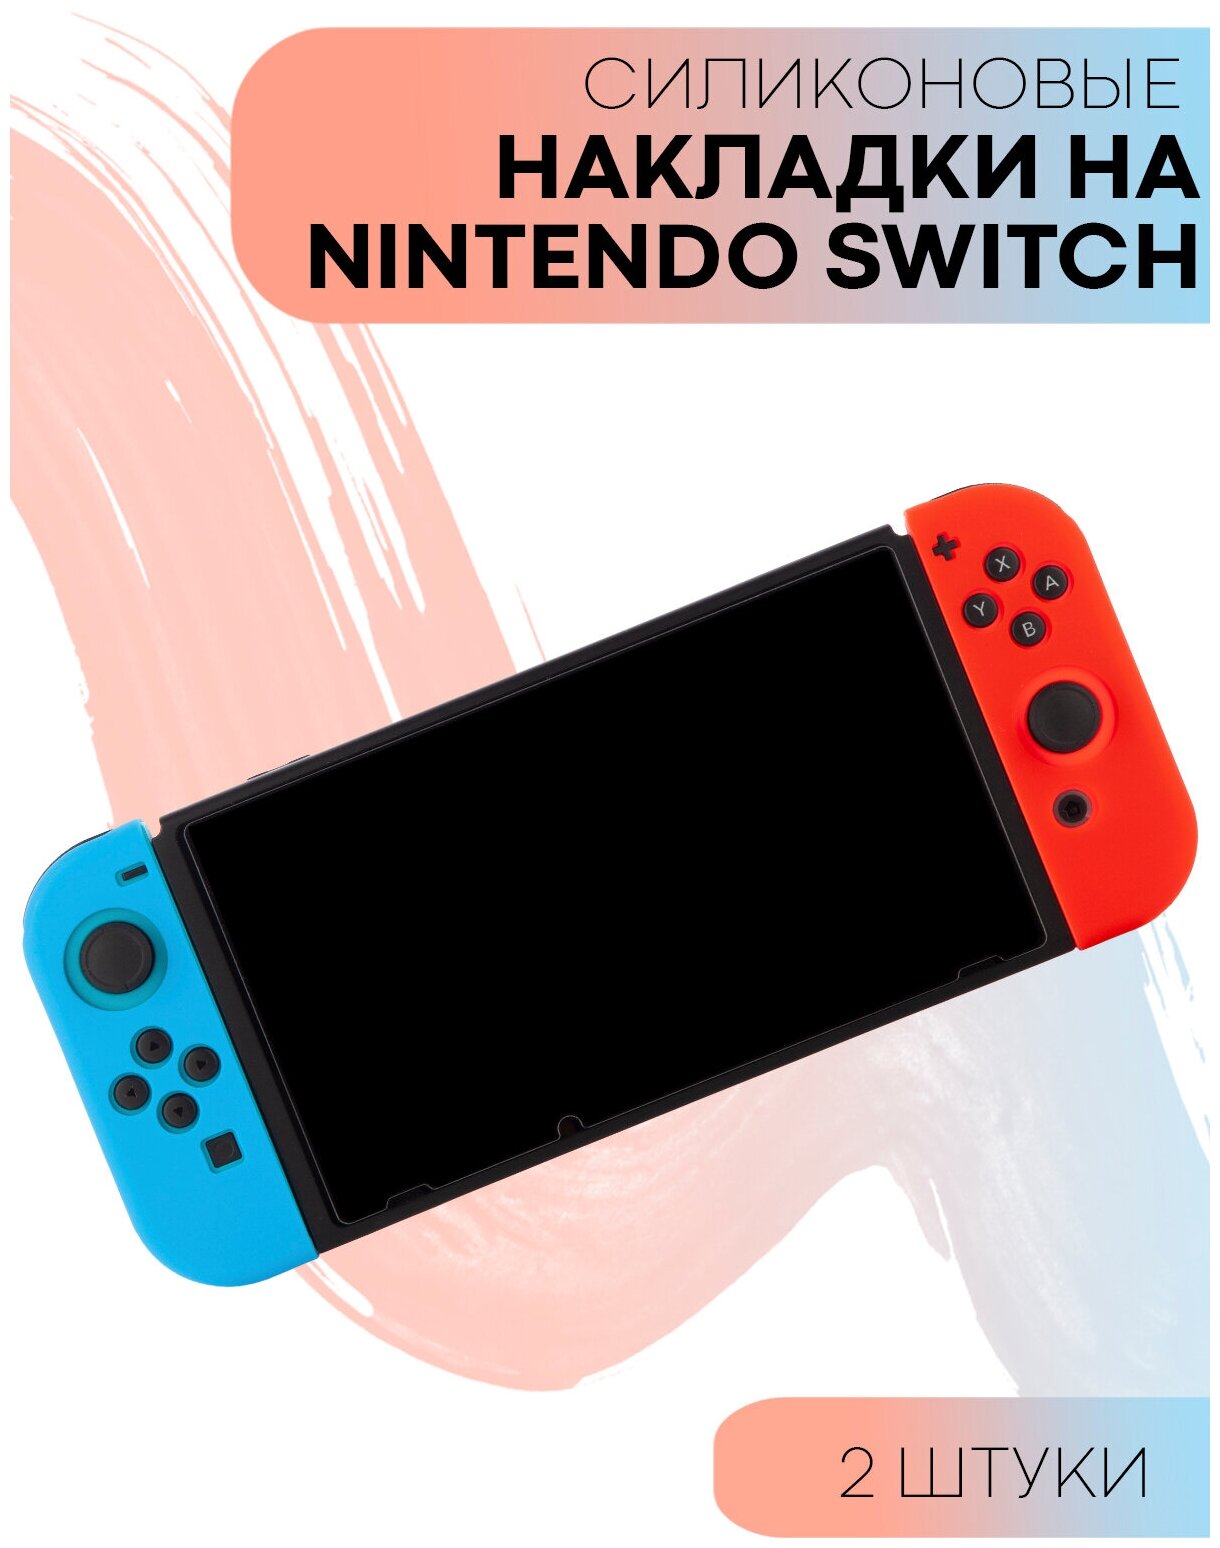 Защитные силиконовые чехлы для контроллера Joy-Con Nintendo Switch (Нинтендо Свитч), синий и красный